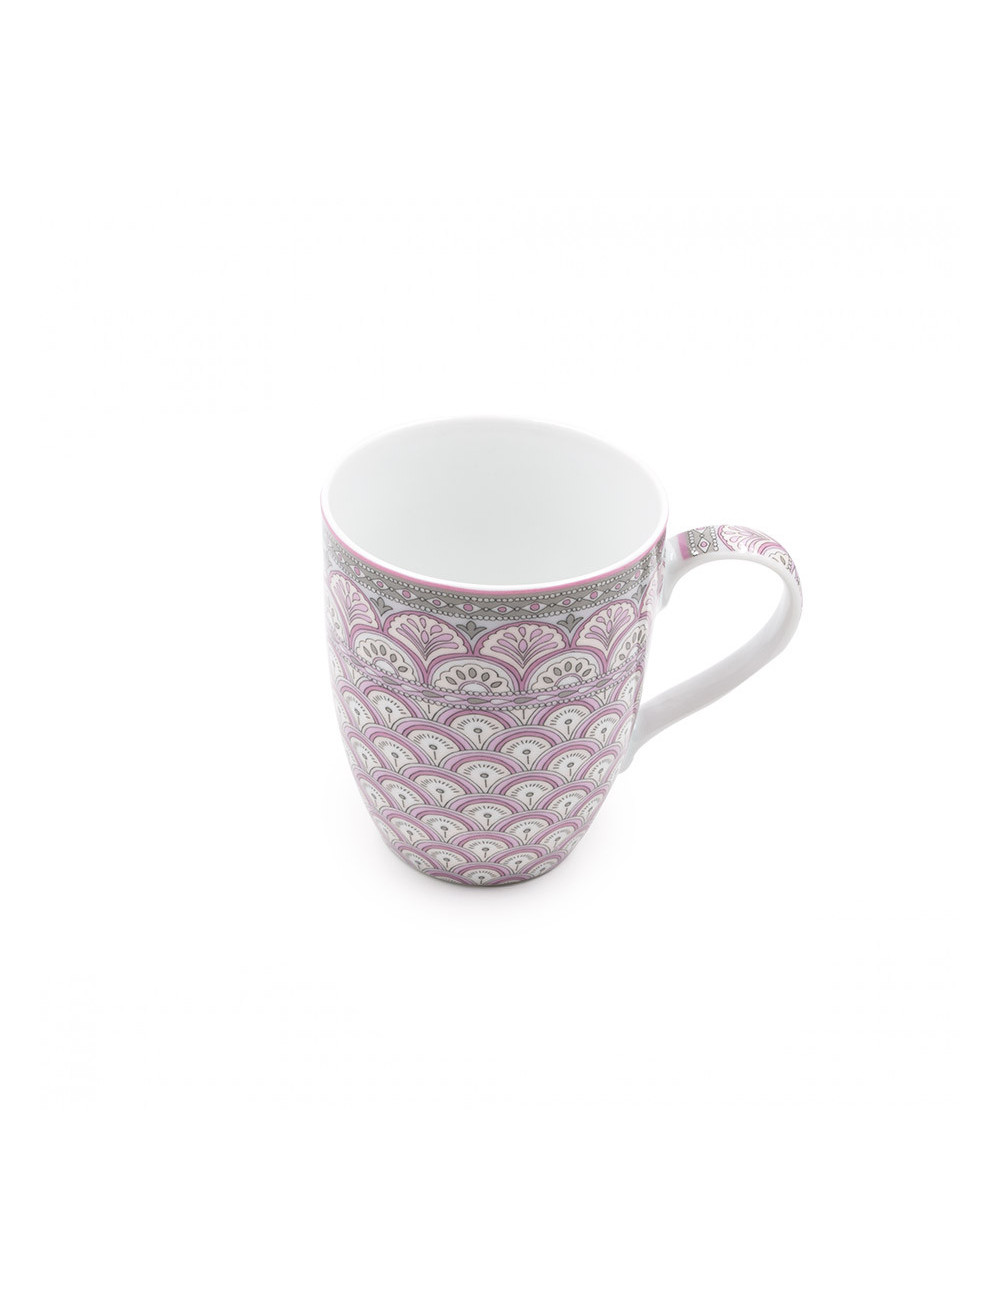 Pratica mug Fans rosa e grigia per gli amanti di tè e tisane - La Pianta del Tè shop on line